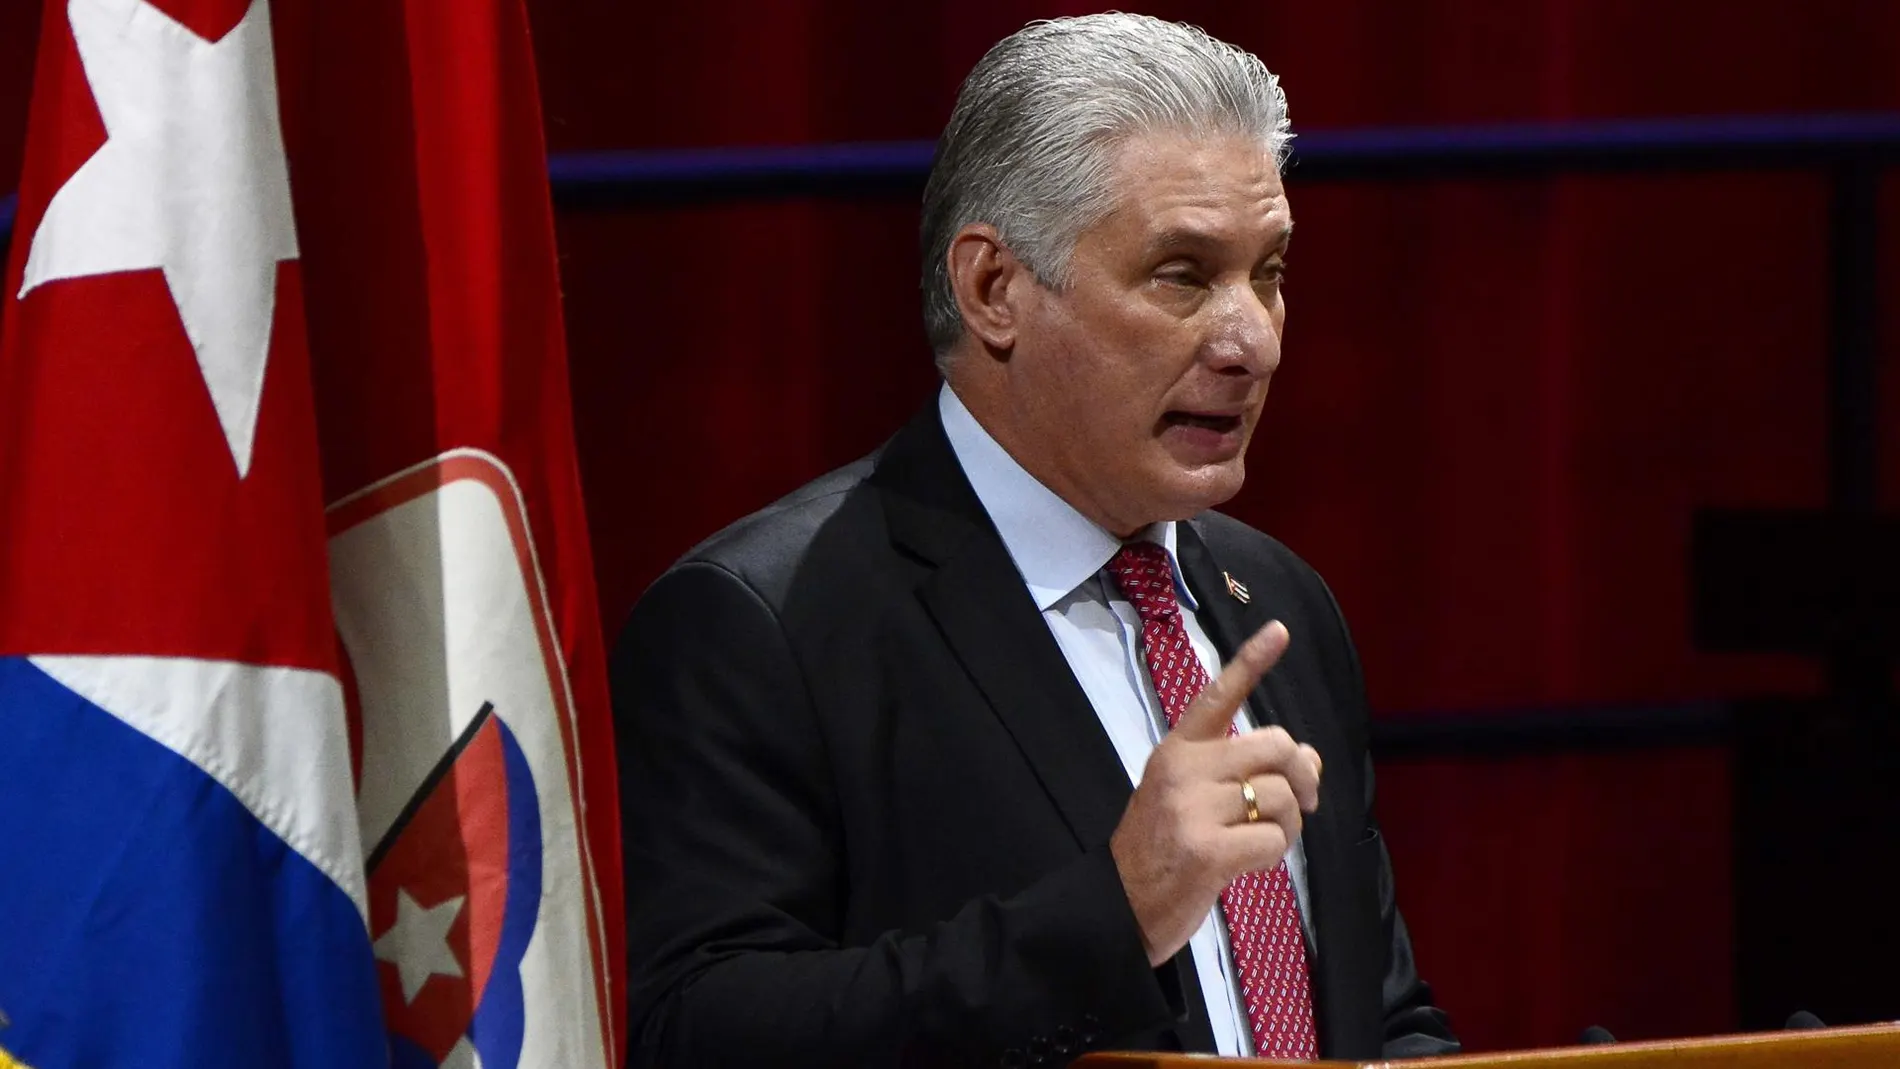 El presidente de Cuba, en un mensaje televisado: "Buscan fracturar la unidad de nuestro pueblo"